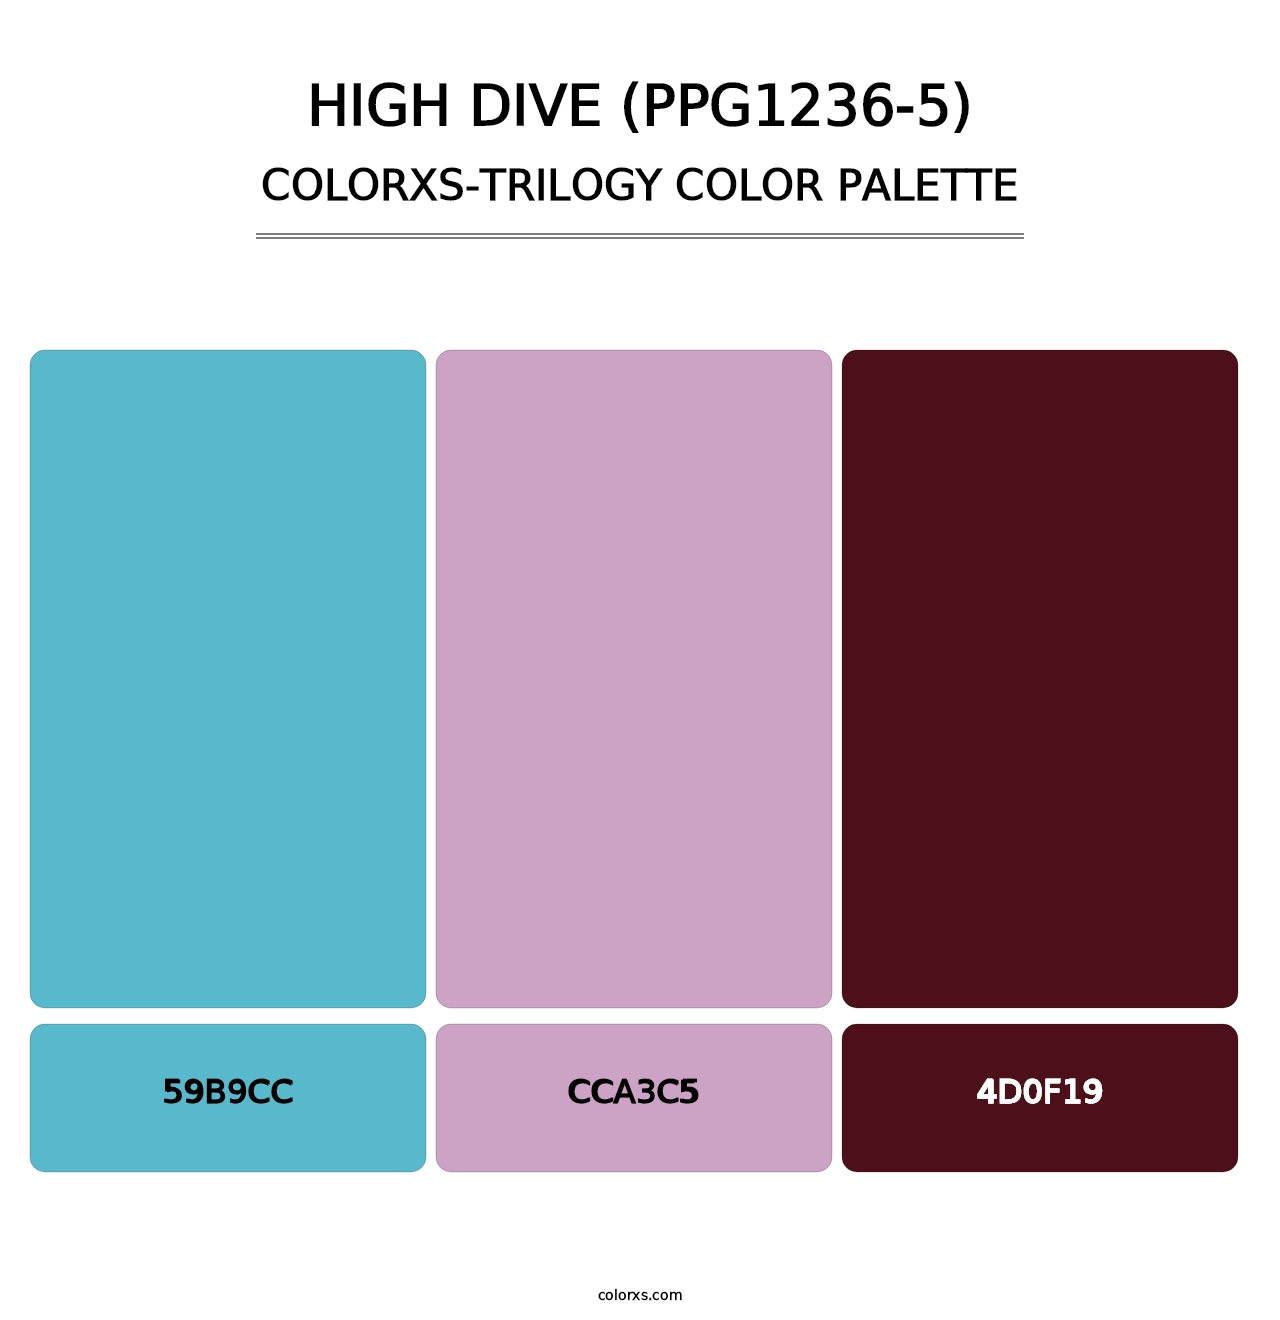 High Dive (PPG1236-5) - Colorxs Trilogy Palette